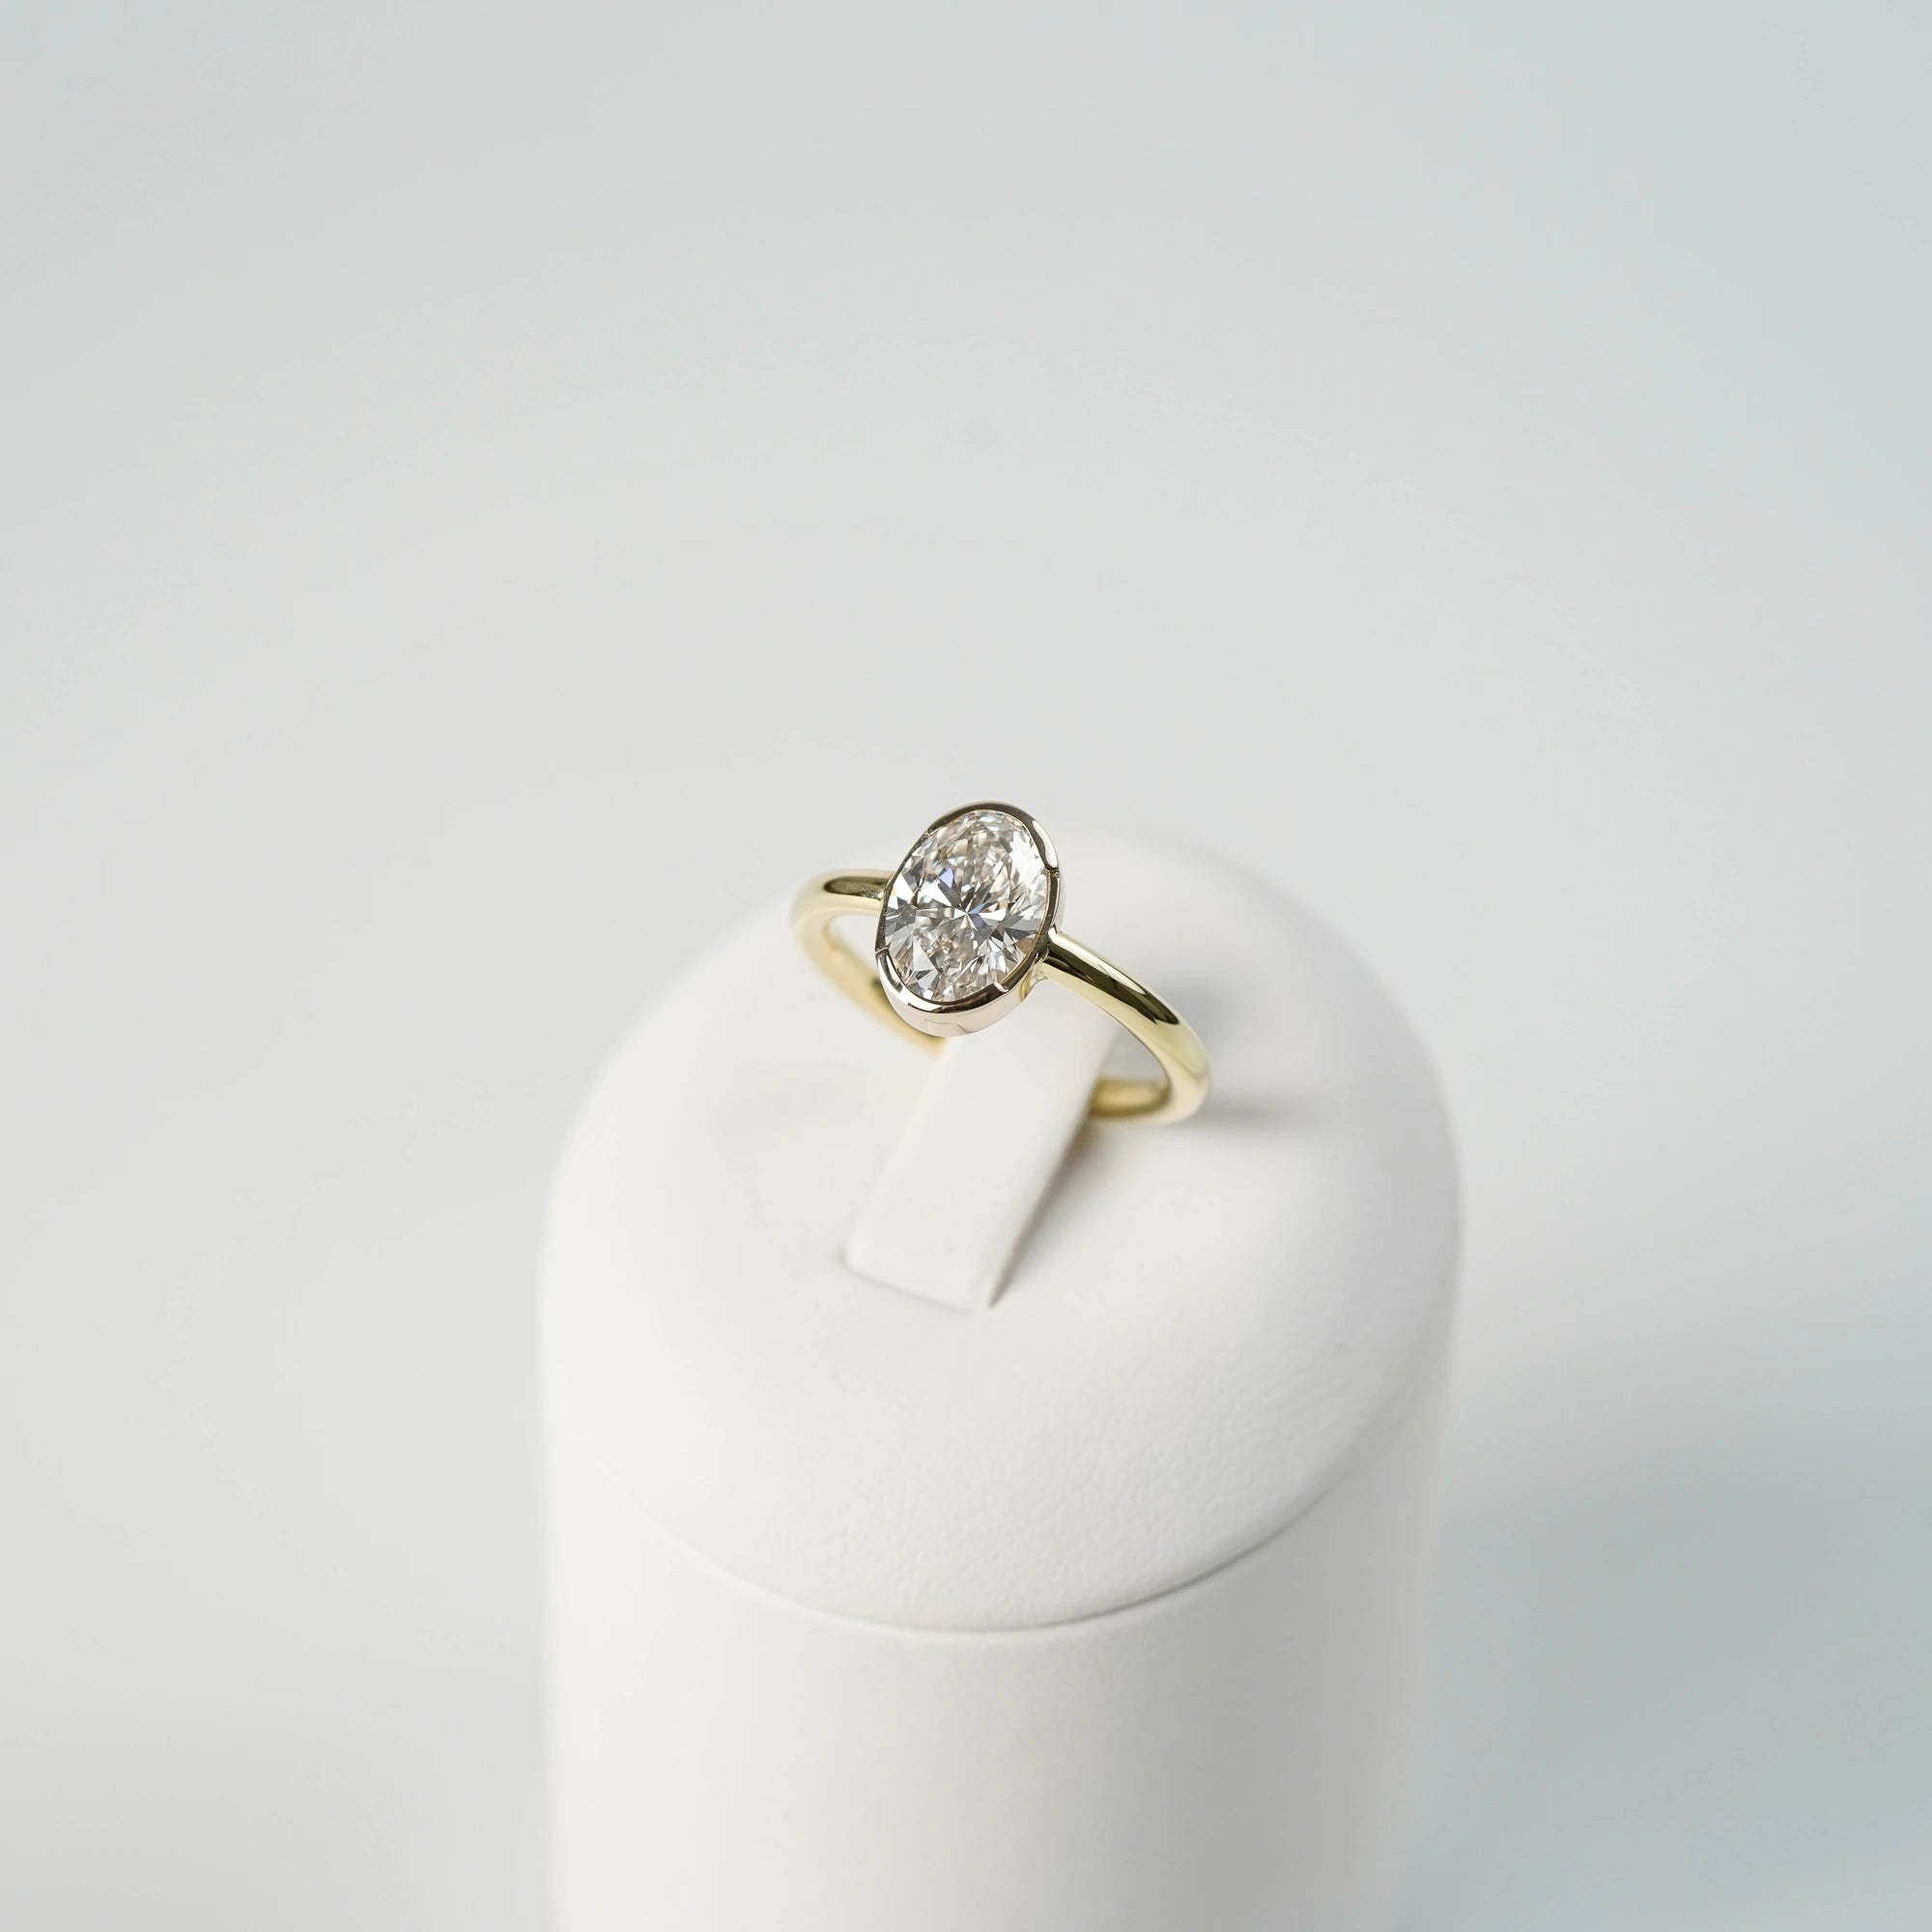 Produktfoto des in Gelbgold gefertigten Verlobungsring "Gleaming Love" mit einem großen Labor-Diamanten mit 2.03ct, während der Ring auf einem Ringständer steckt